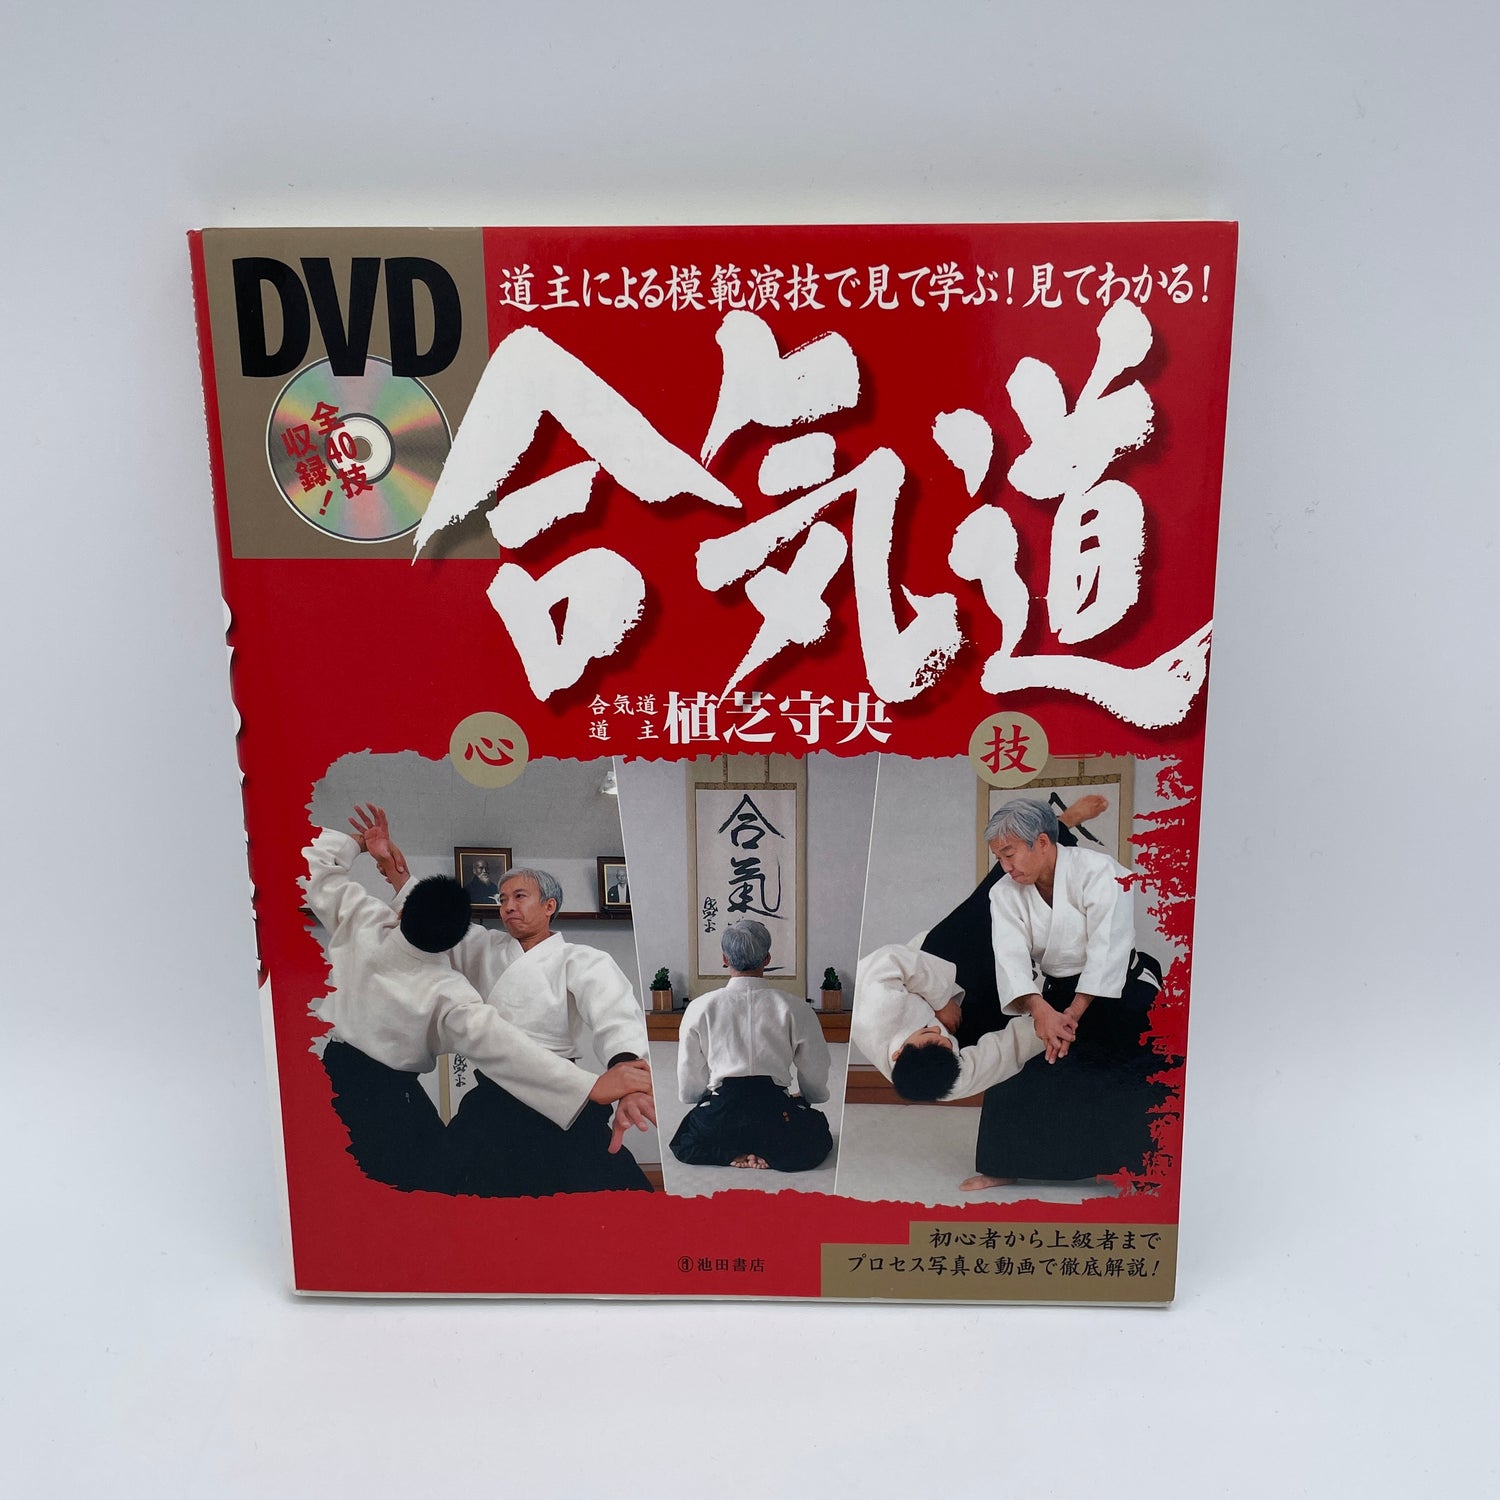 Aprenda Aikido viendo el libro y el DVD de Moriteru Ueshiba (usado)